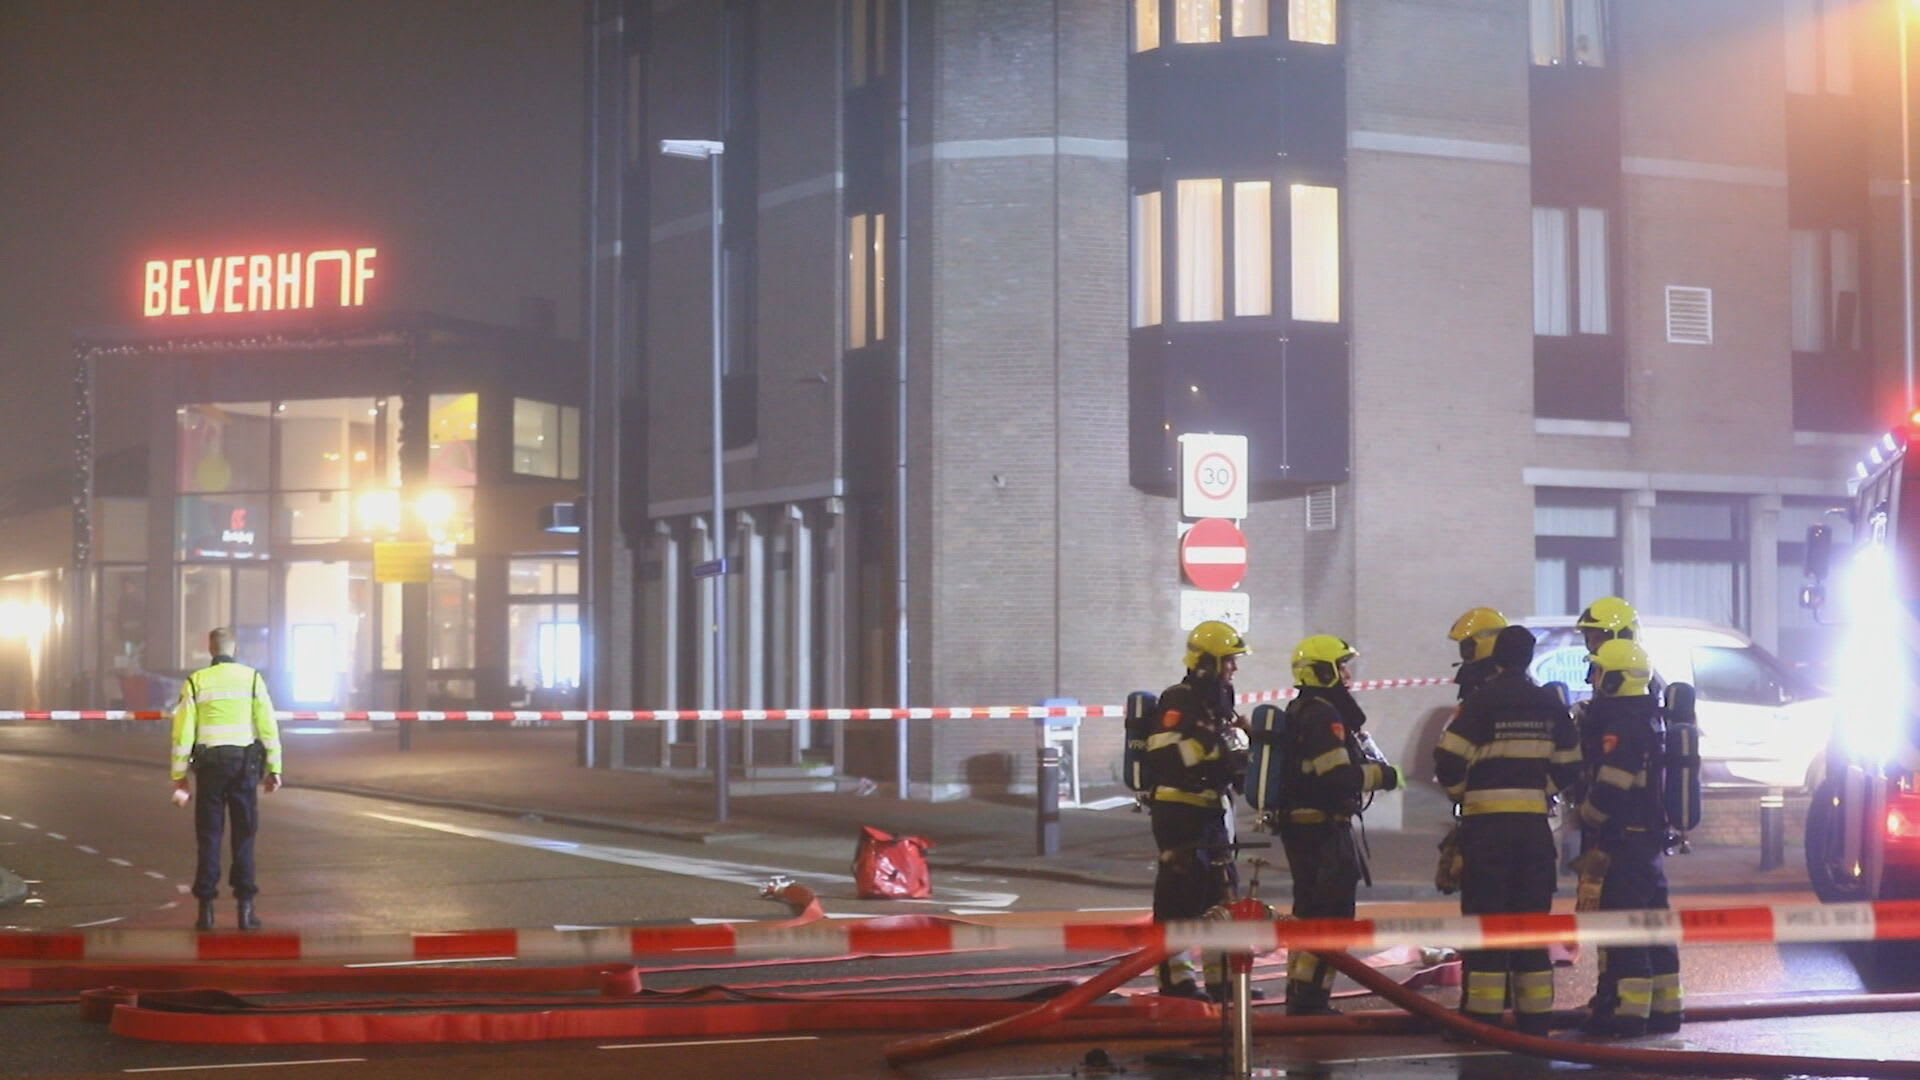 Burgemeester sluit Poolse supermarkt Beverwijk na tweede explosie: 'Ongehoorde aanval op openbare orde'